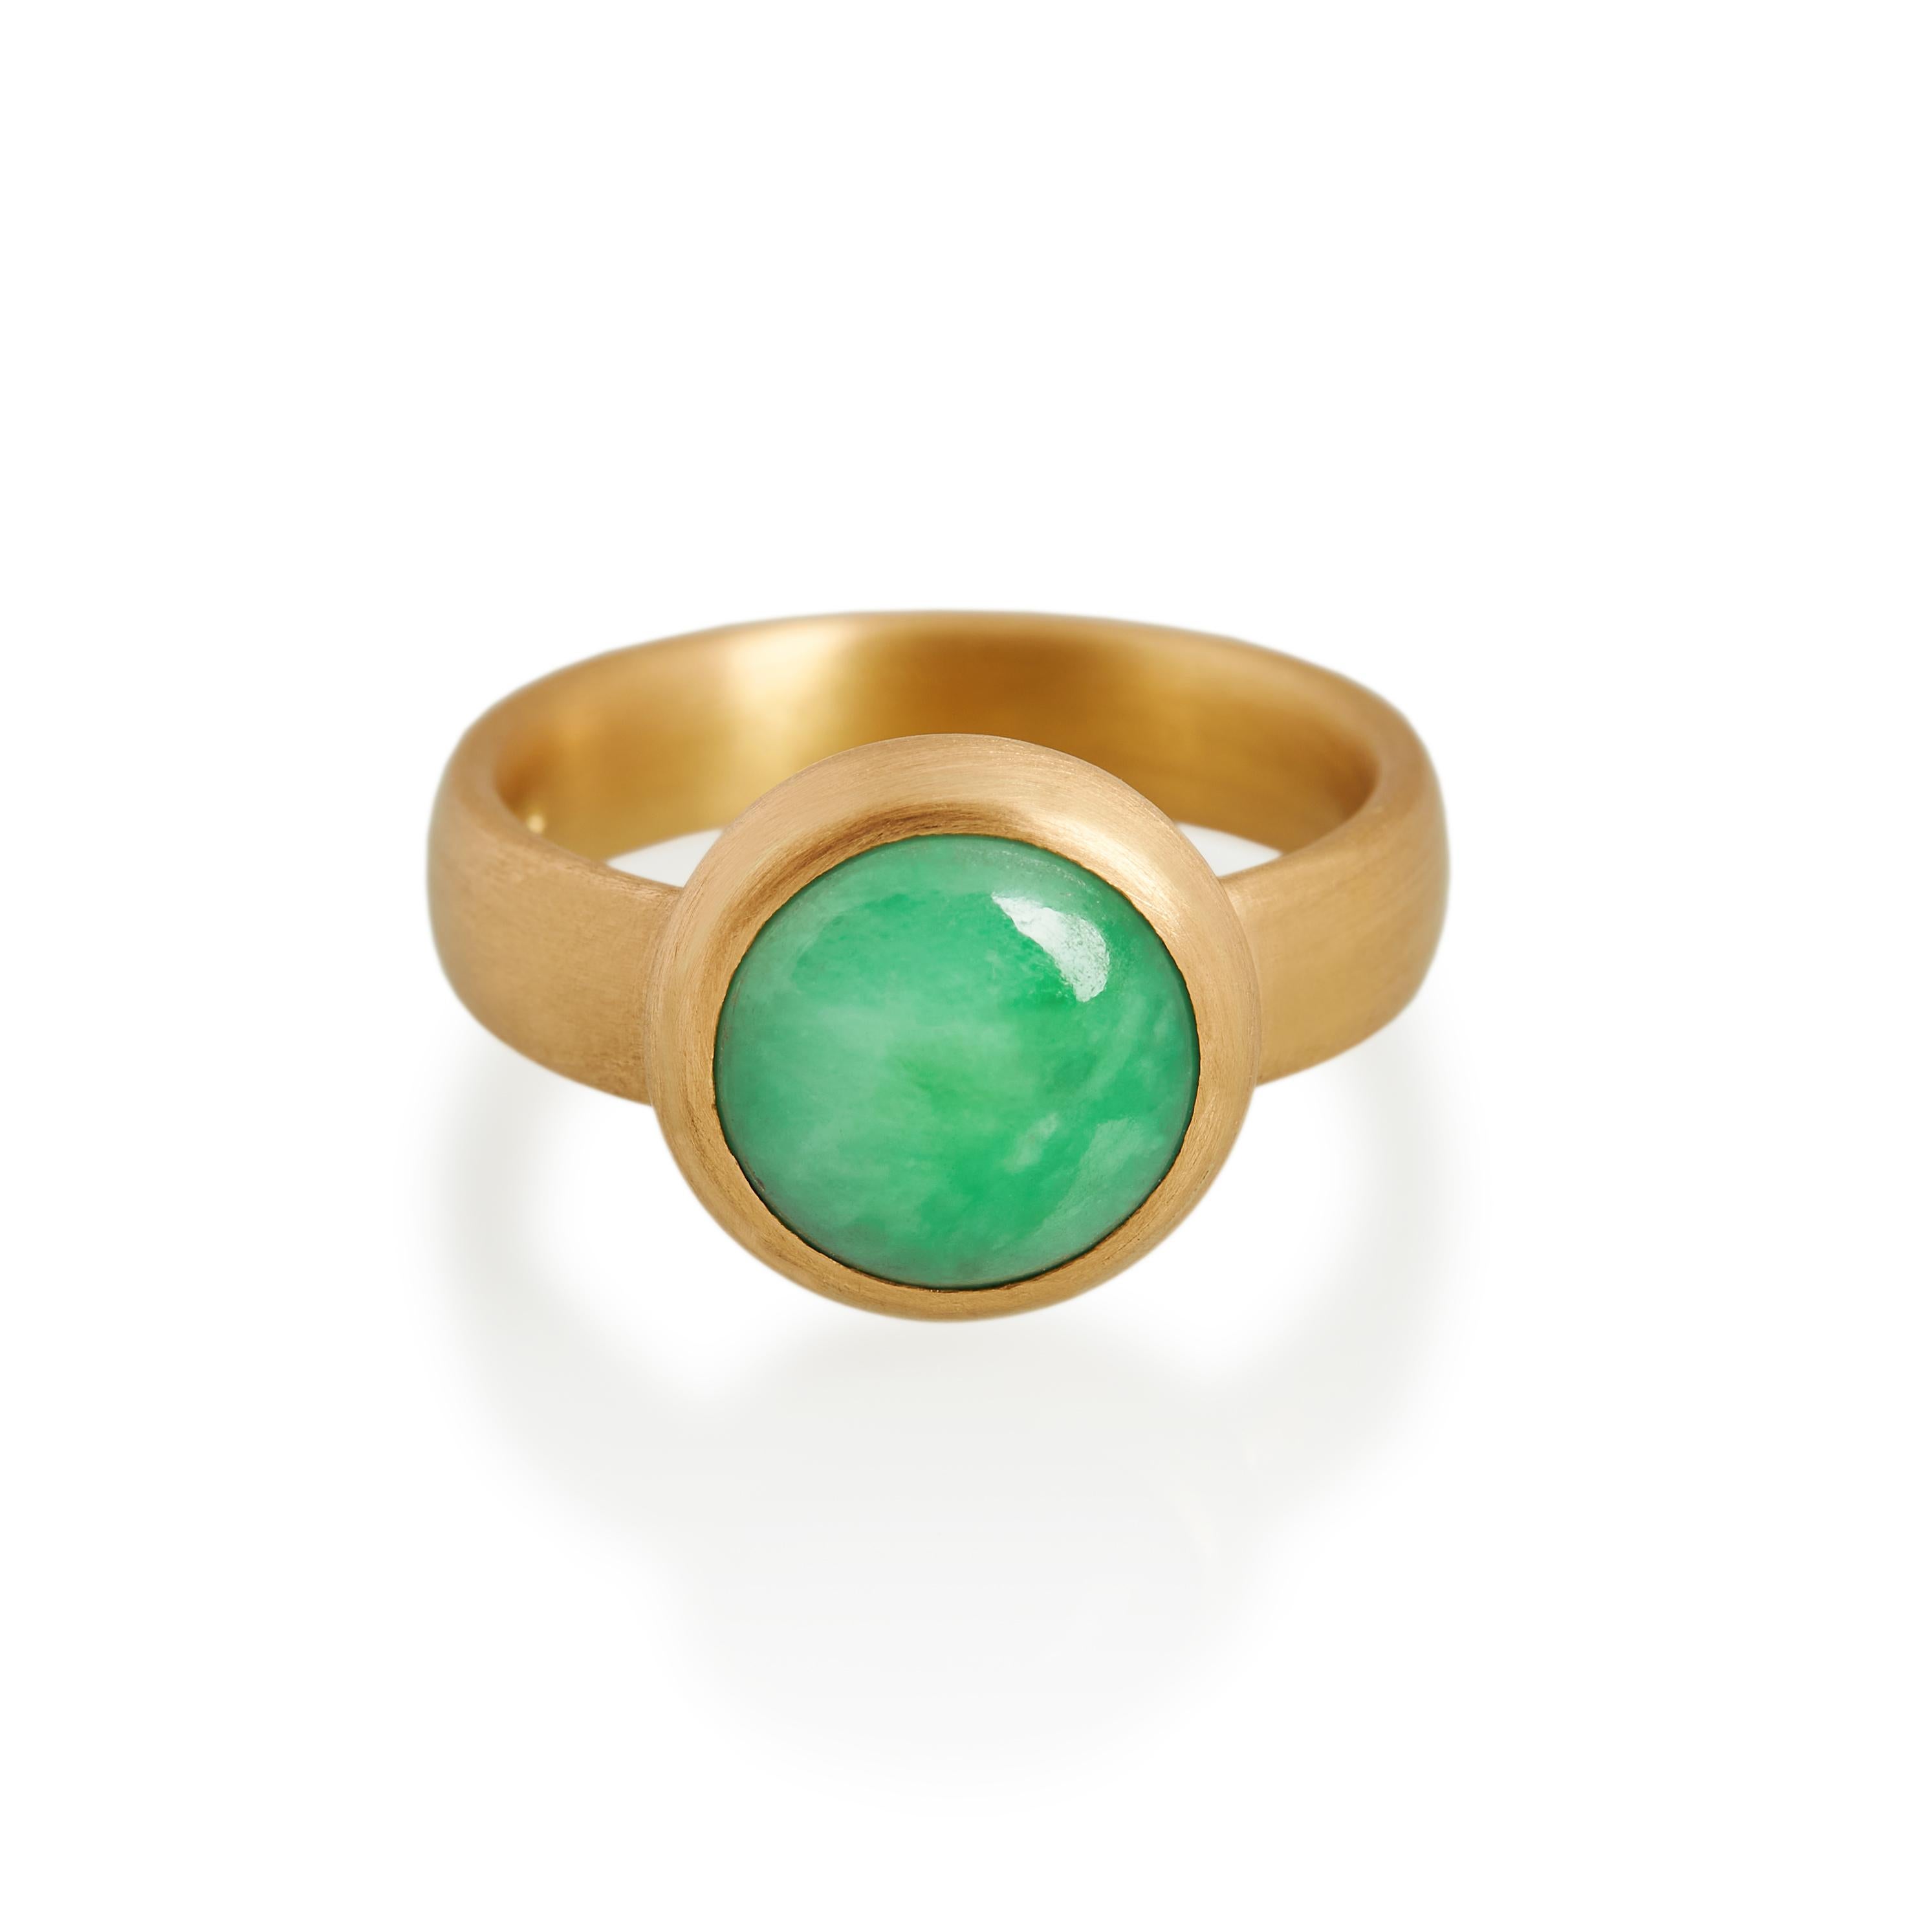 Kreisförmiger Ring aus natürlicher antiker Jade mit Cabochon-Schliff. Diese exquisite, lebhafte grüne Jade ist in mattes, handgeschnitztes 22-karätiges Gold mit einer gewölbten Rückseite eingefasst. 
Ref: G20004

12mm runde natürliche Jade 
22 Karat